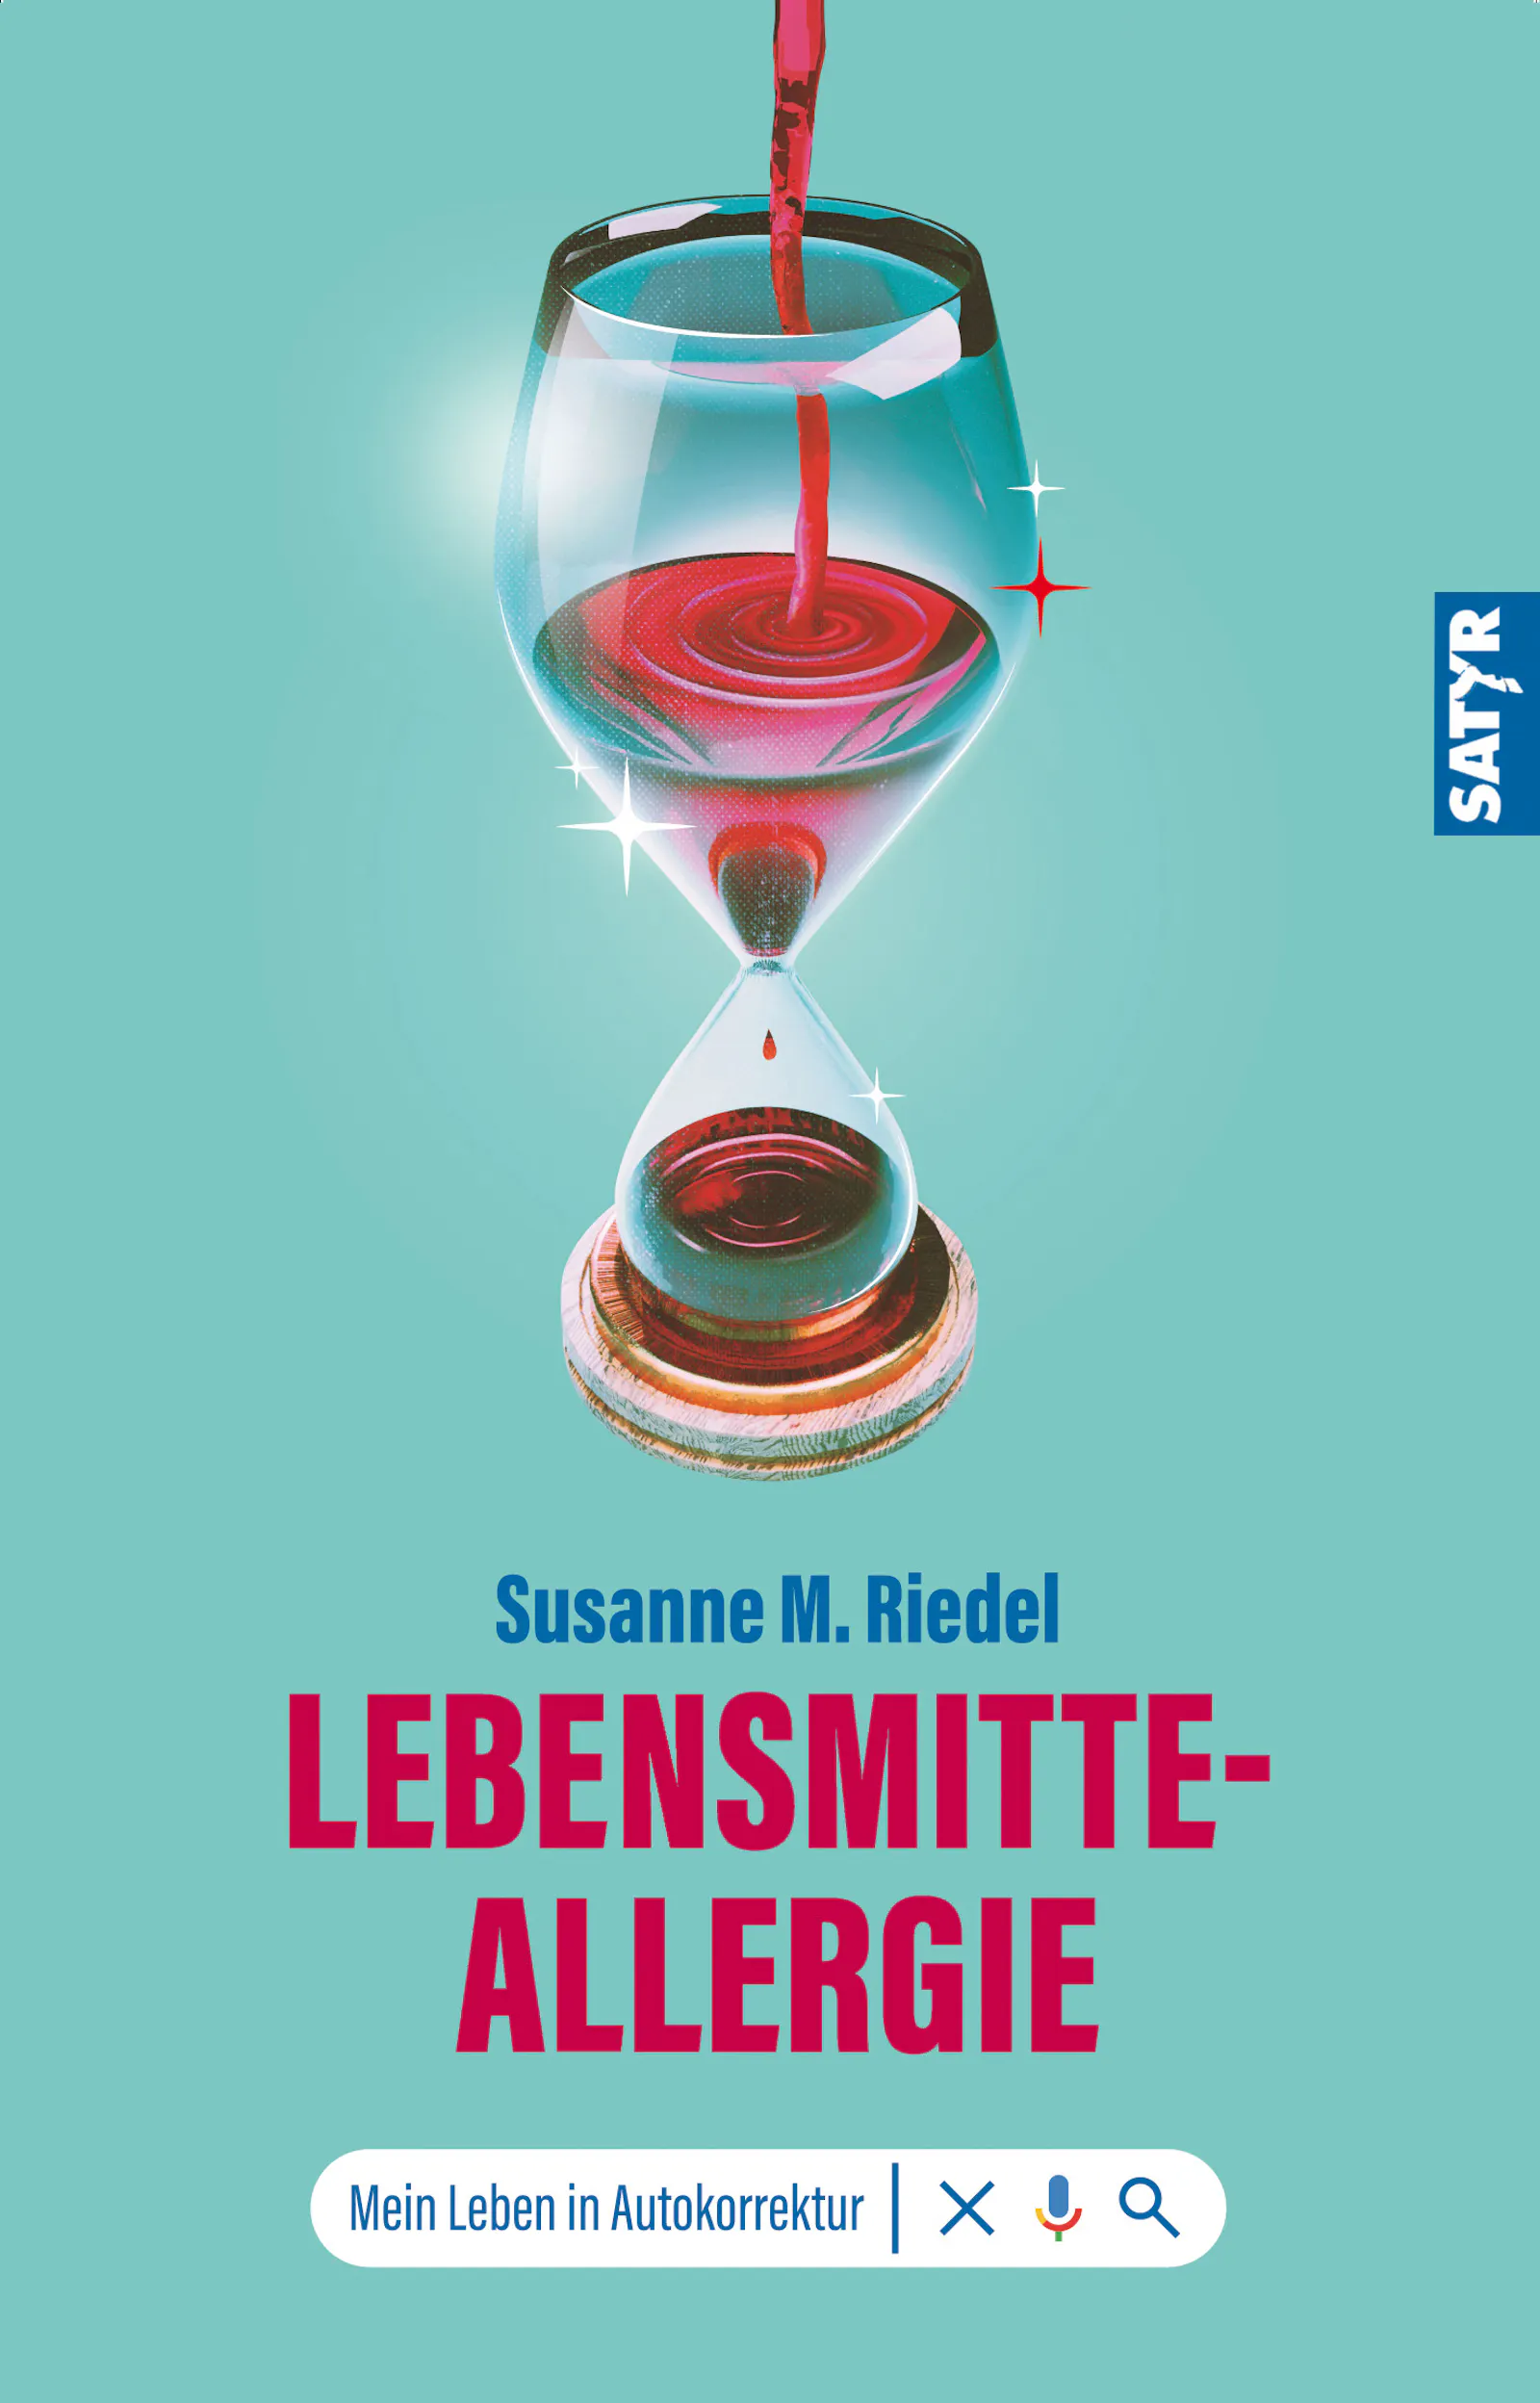 Kurzgeschichtenband "Lebensmitteallergie. Mein Leben in Autokorrektur" von Susanne M. Riedel, erschienen bei Satyr Verlag